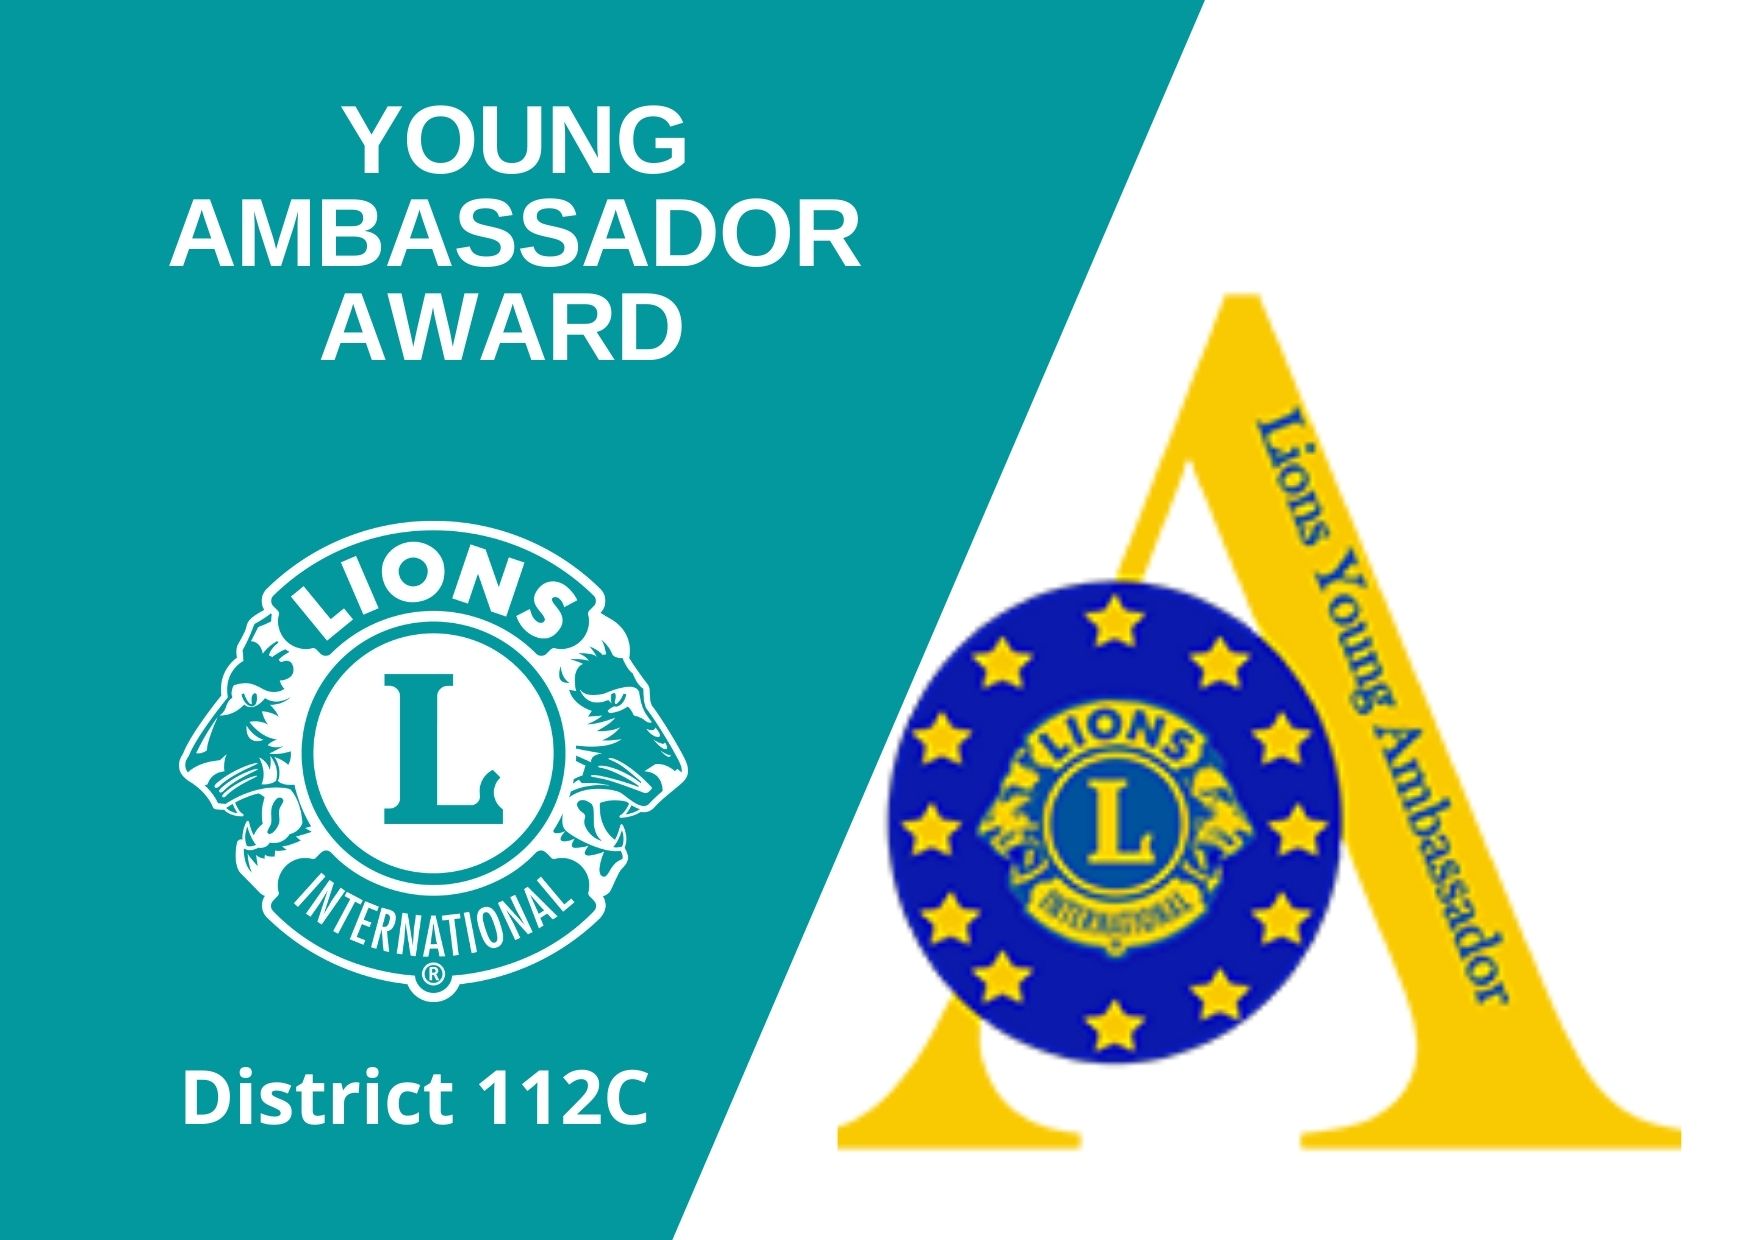 Young ambassador award